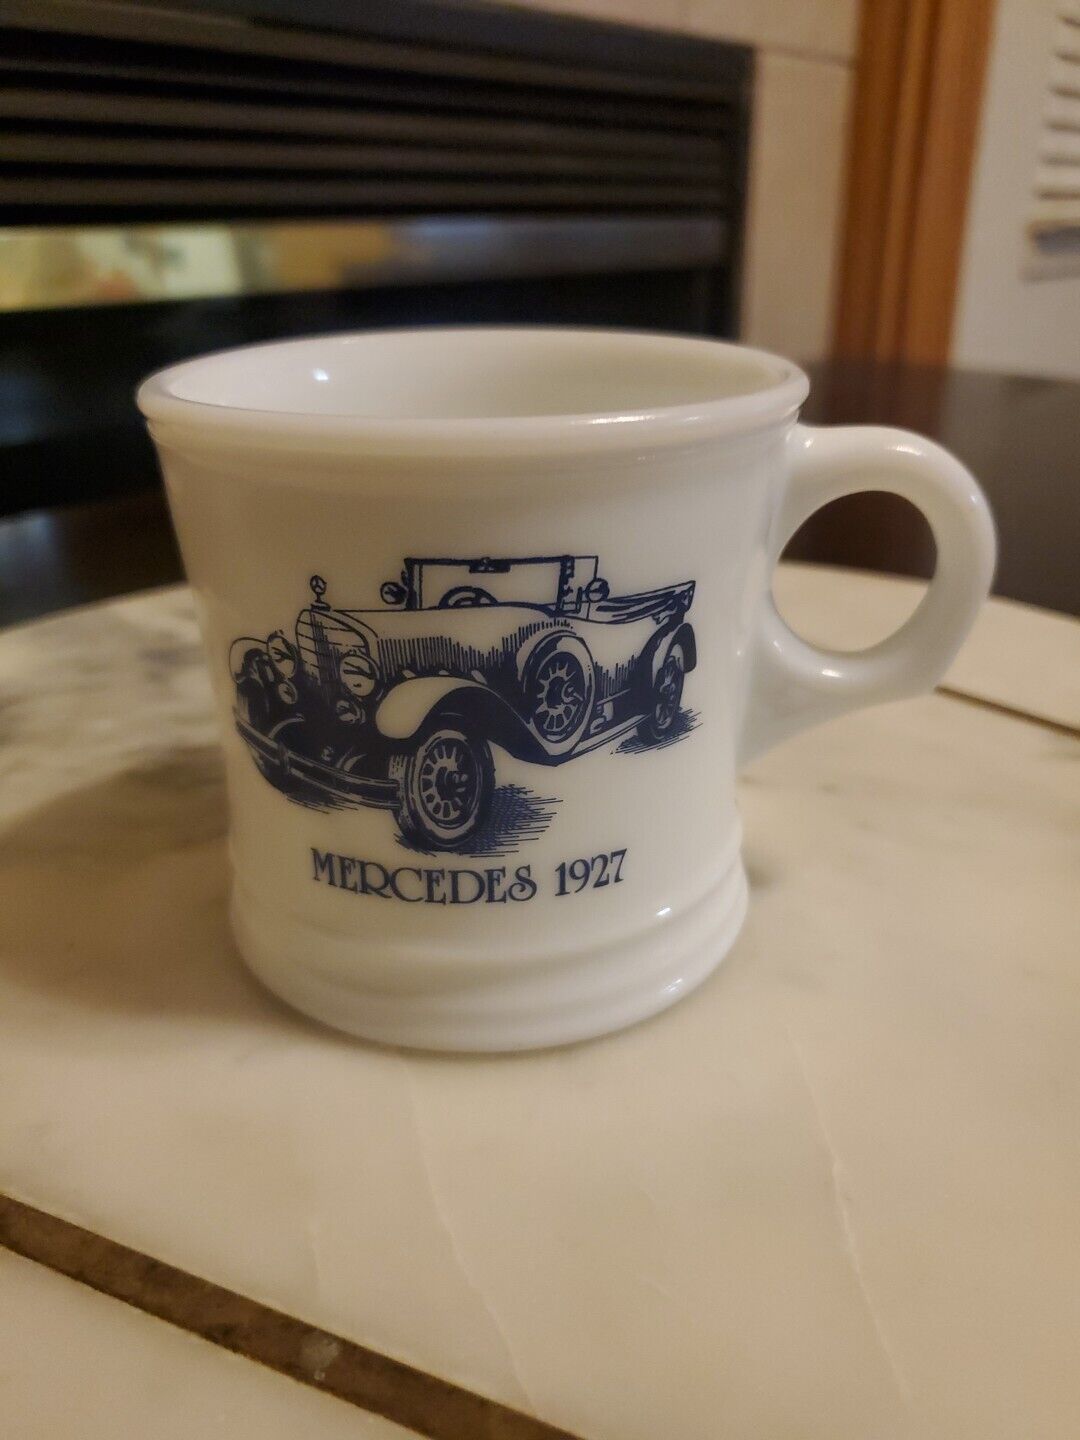 Surrey - Milk Glass Shaving Mug - 1927 Mercedes - Classic Car Mug - Made in USA